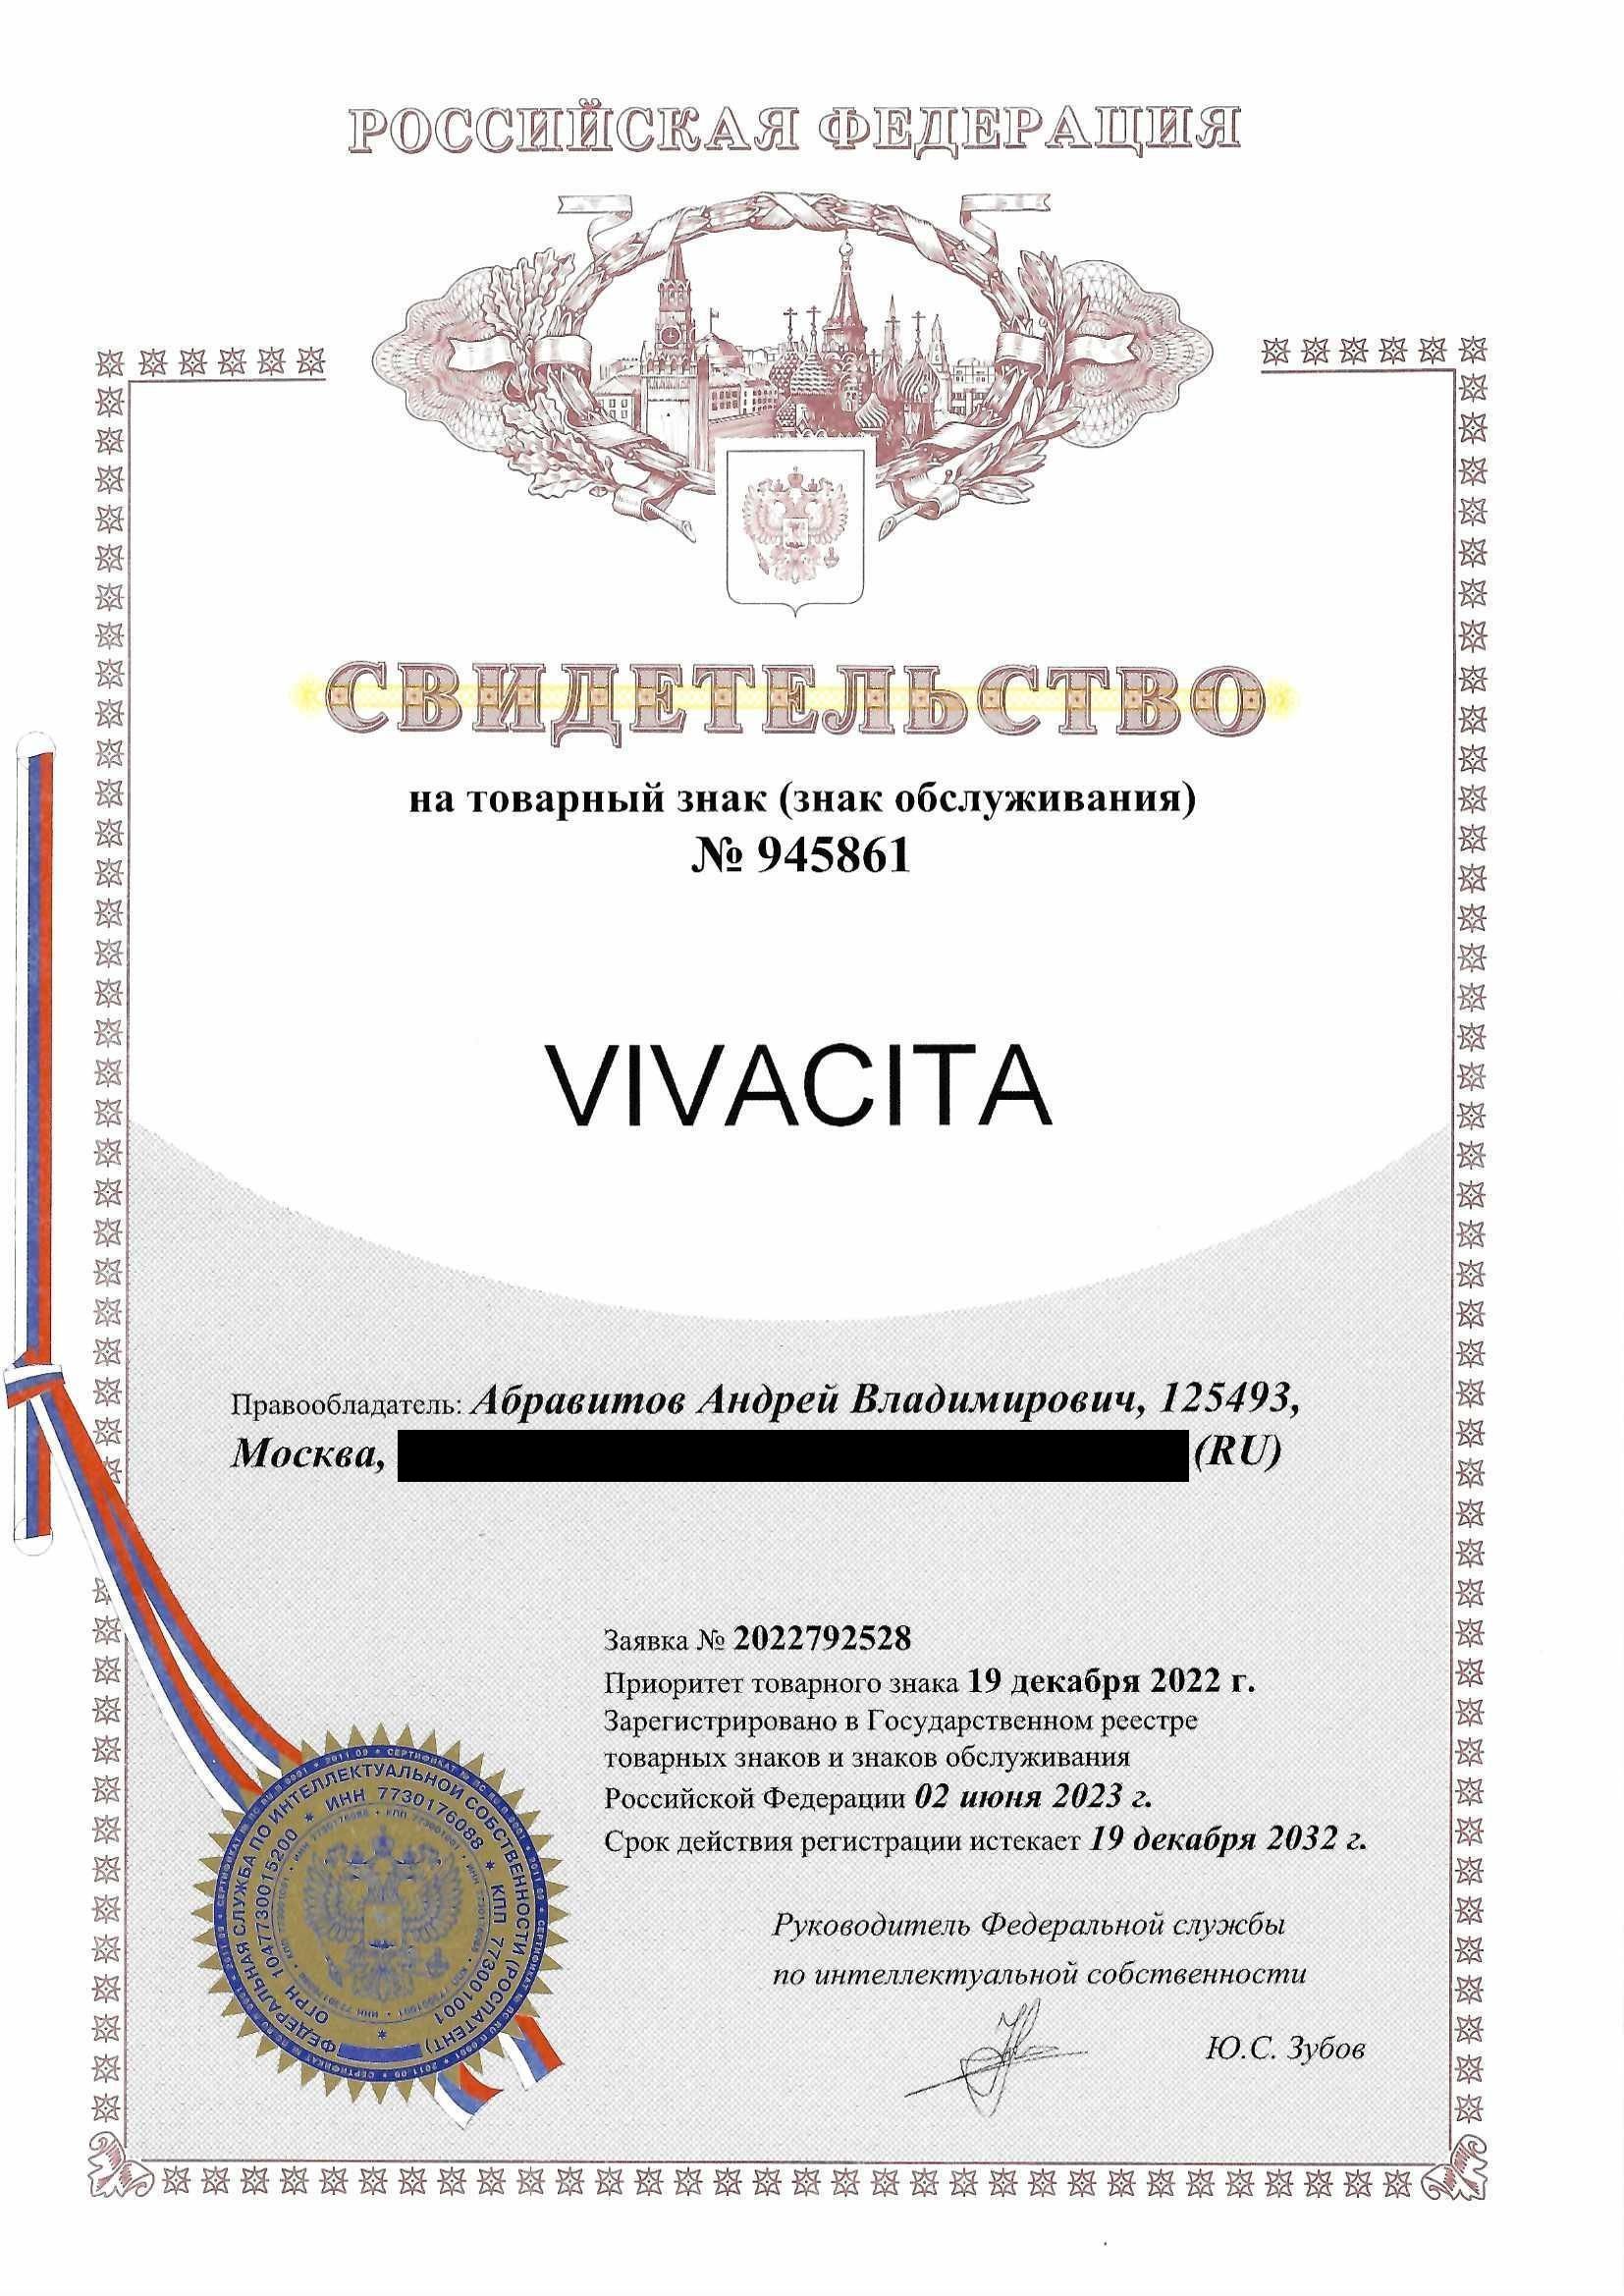 Товарный знак № 945861 – Vivacita